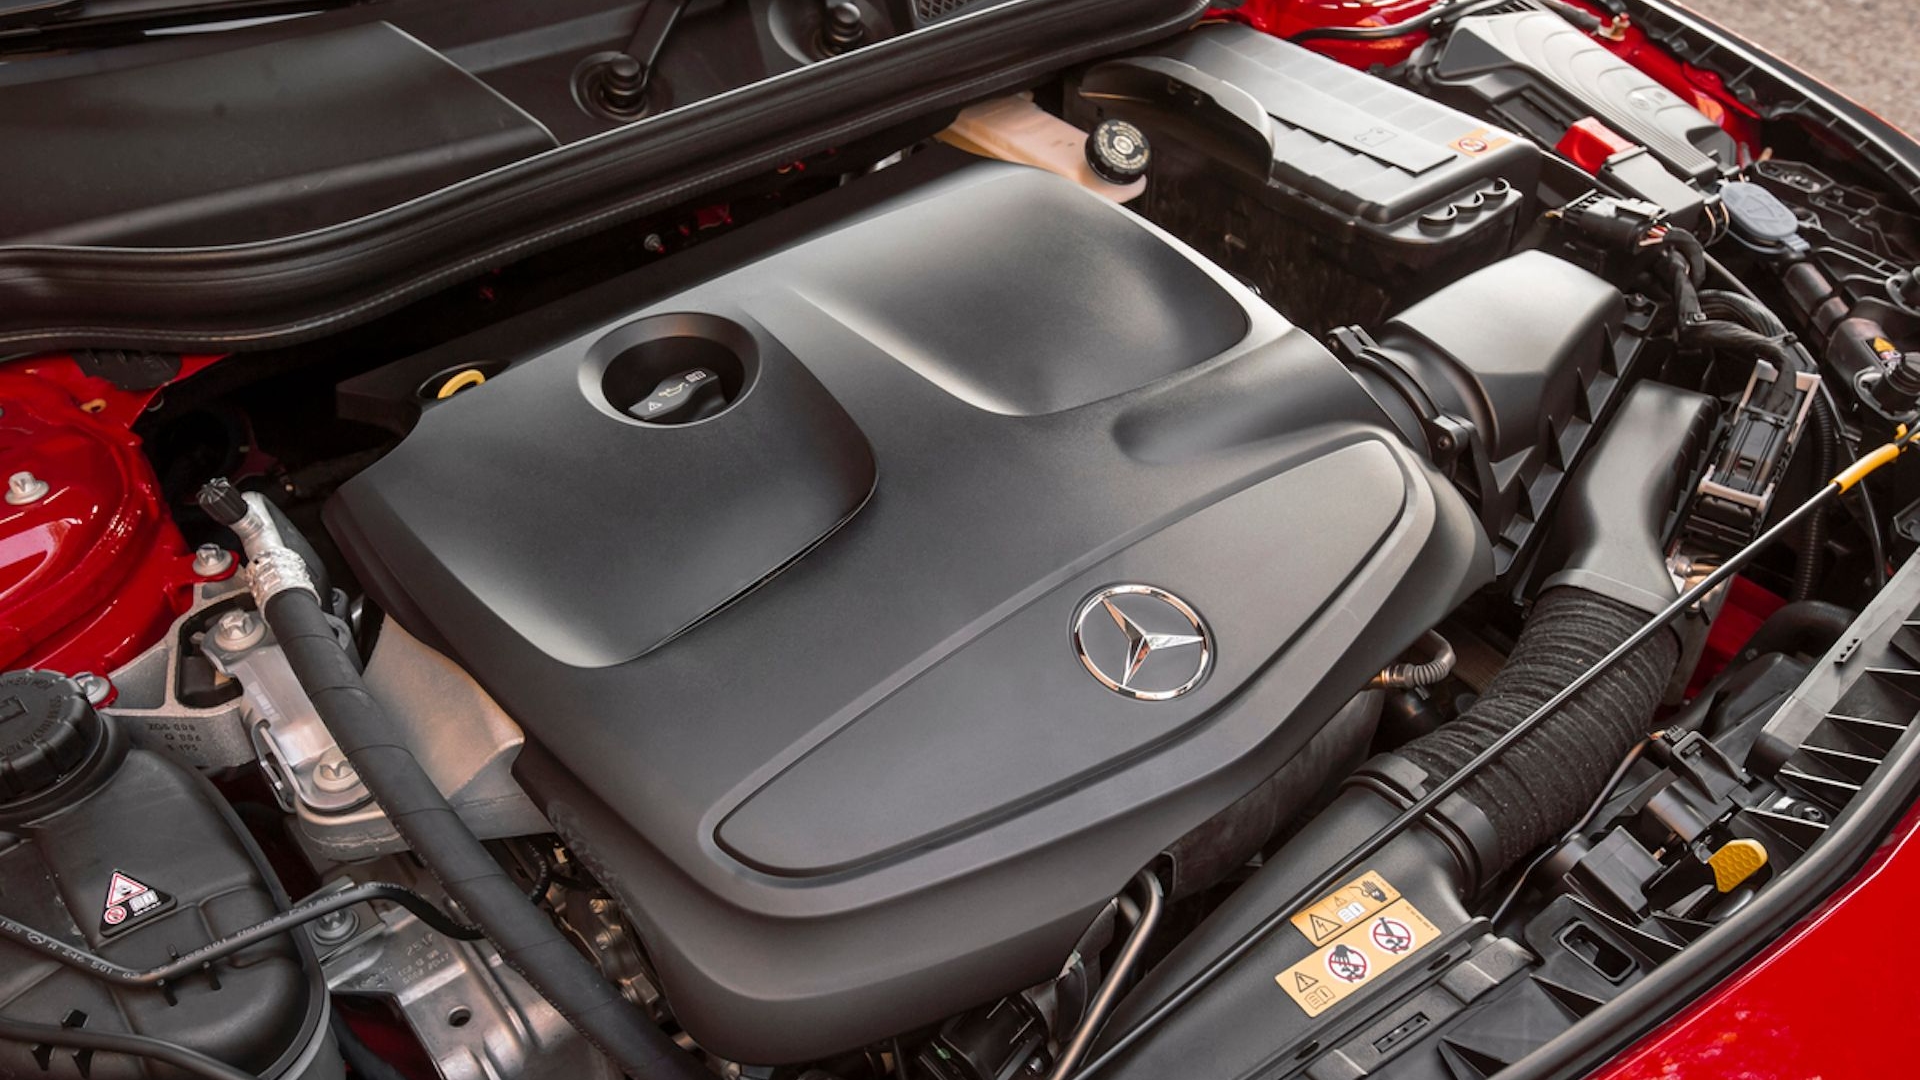 2015 Mercedes-Benz CLA-Class